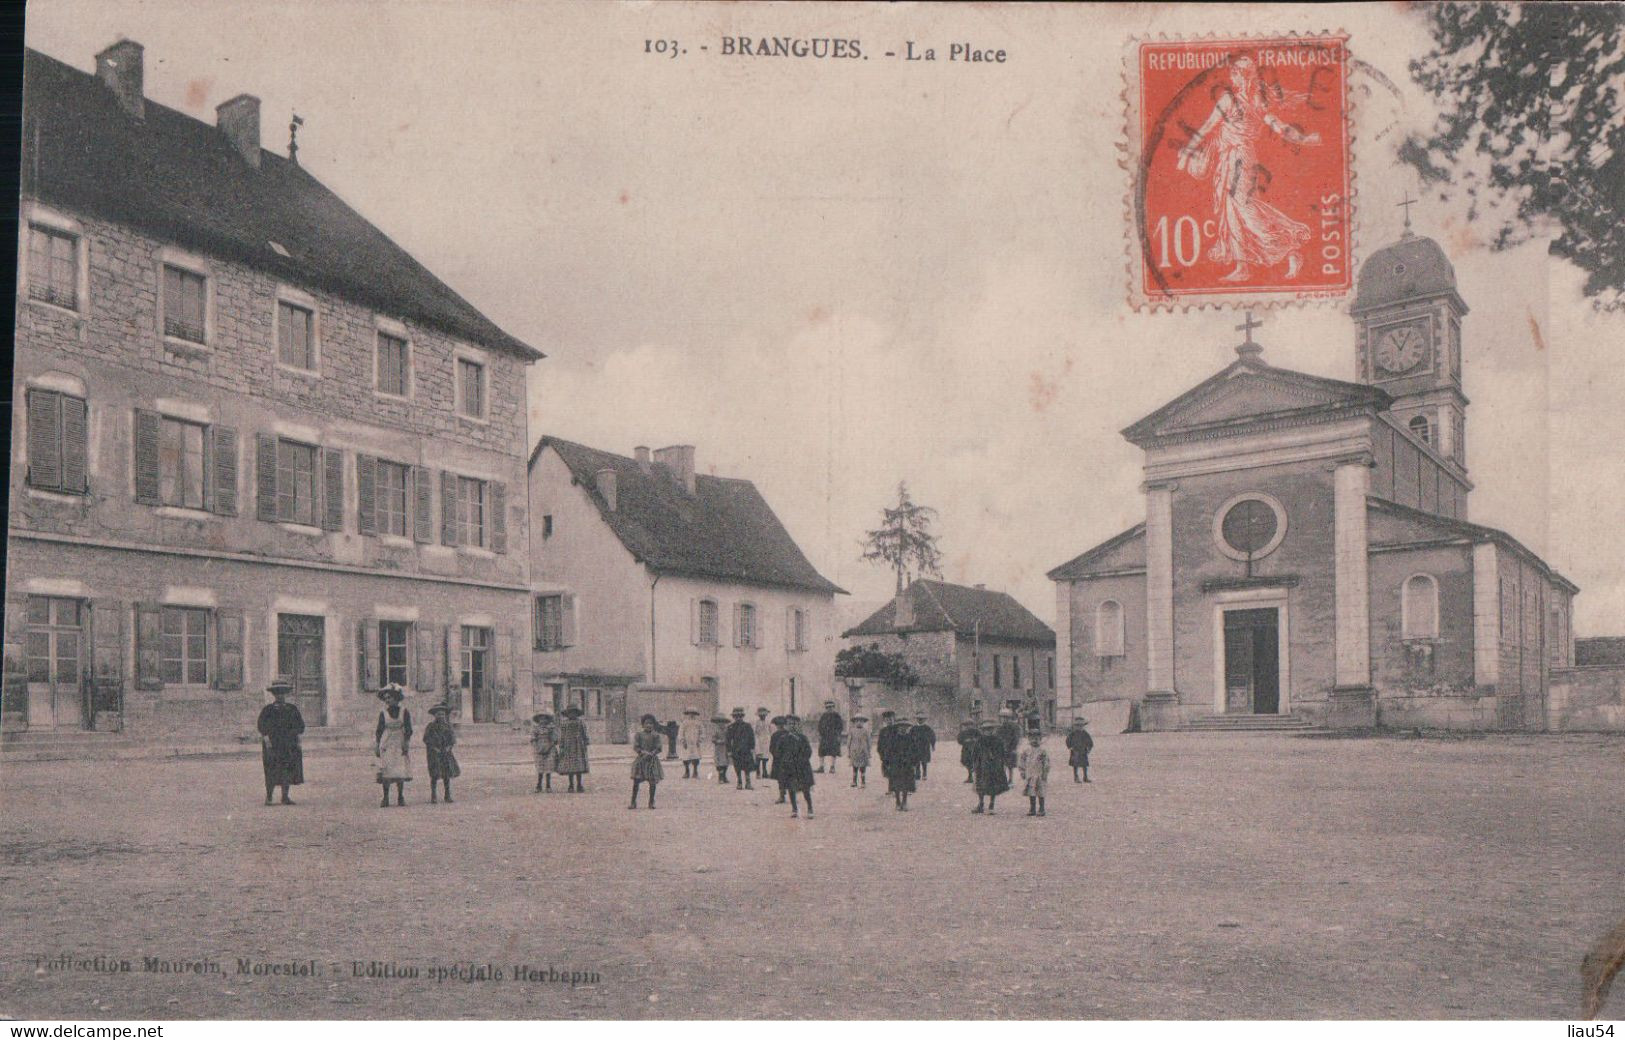 BRANGUES La Place (1915) - Brangues